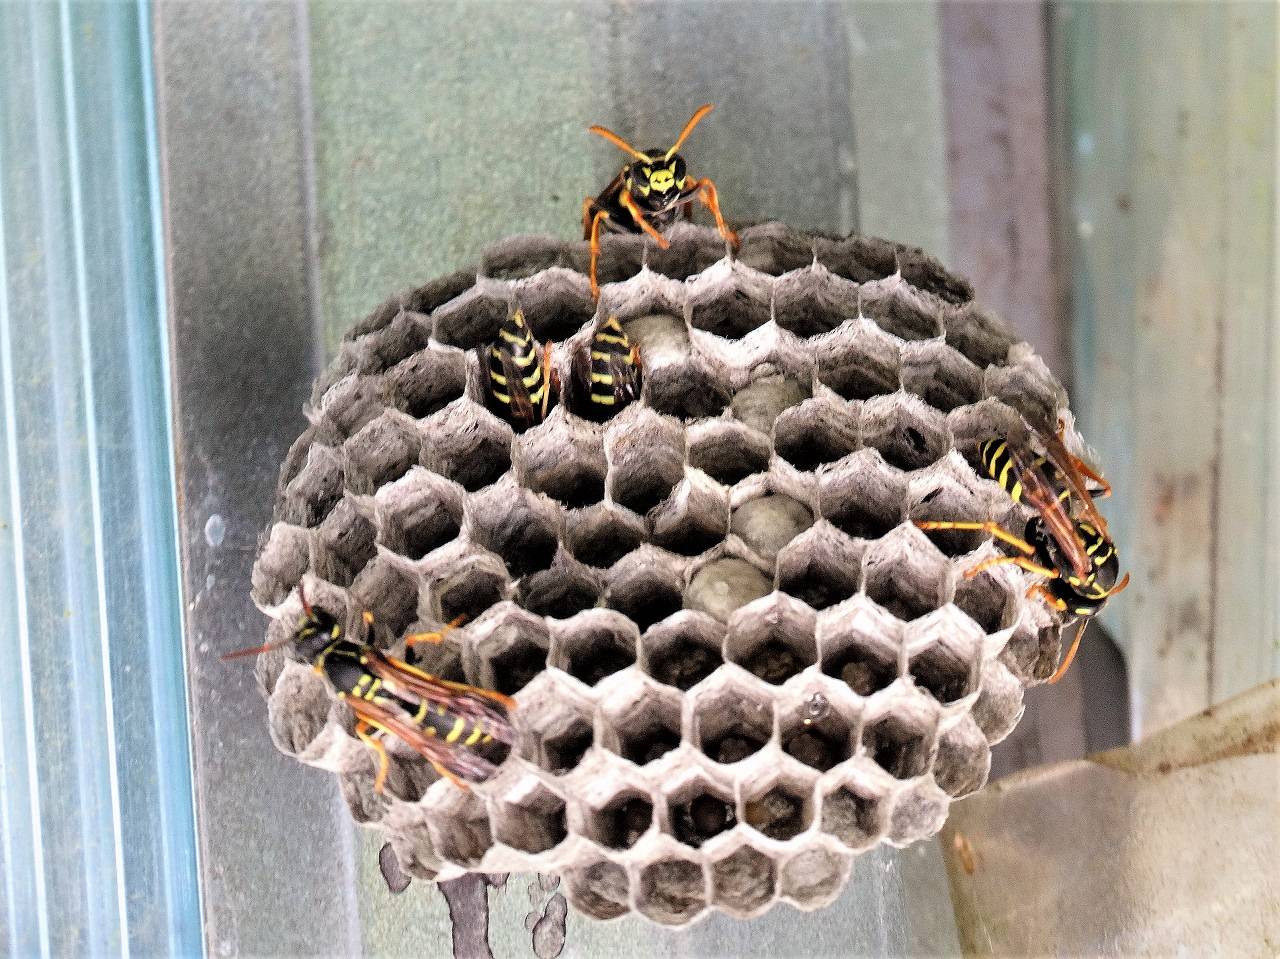 Как устроено гнездо осы, и каким образом оно используется в медицине?